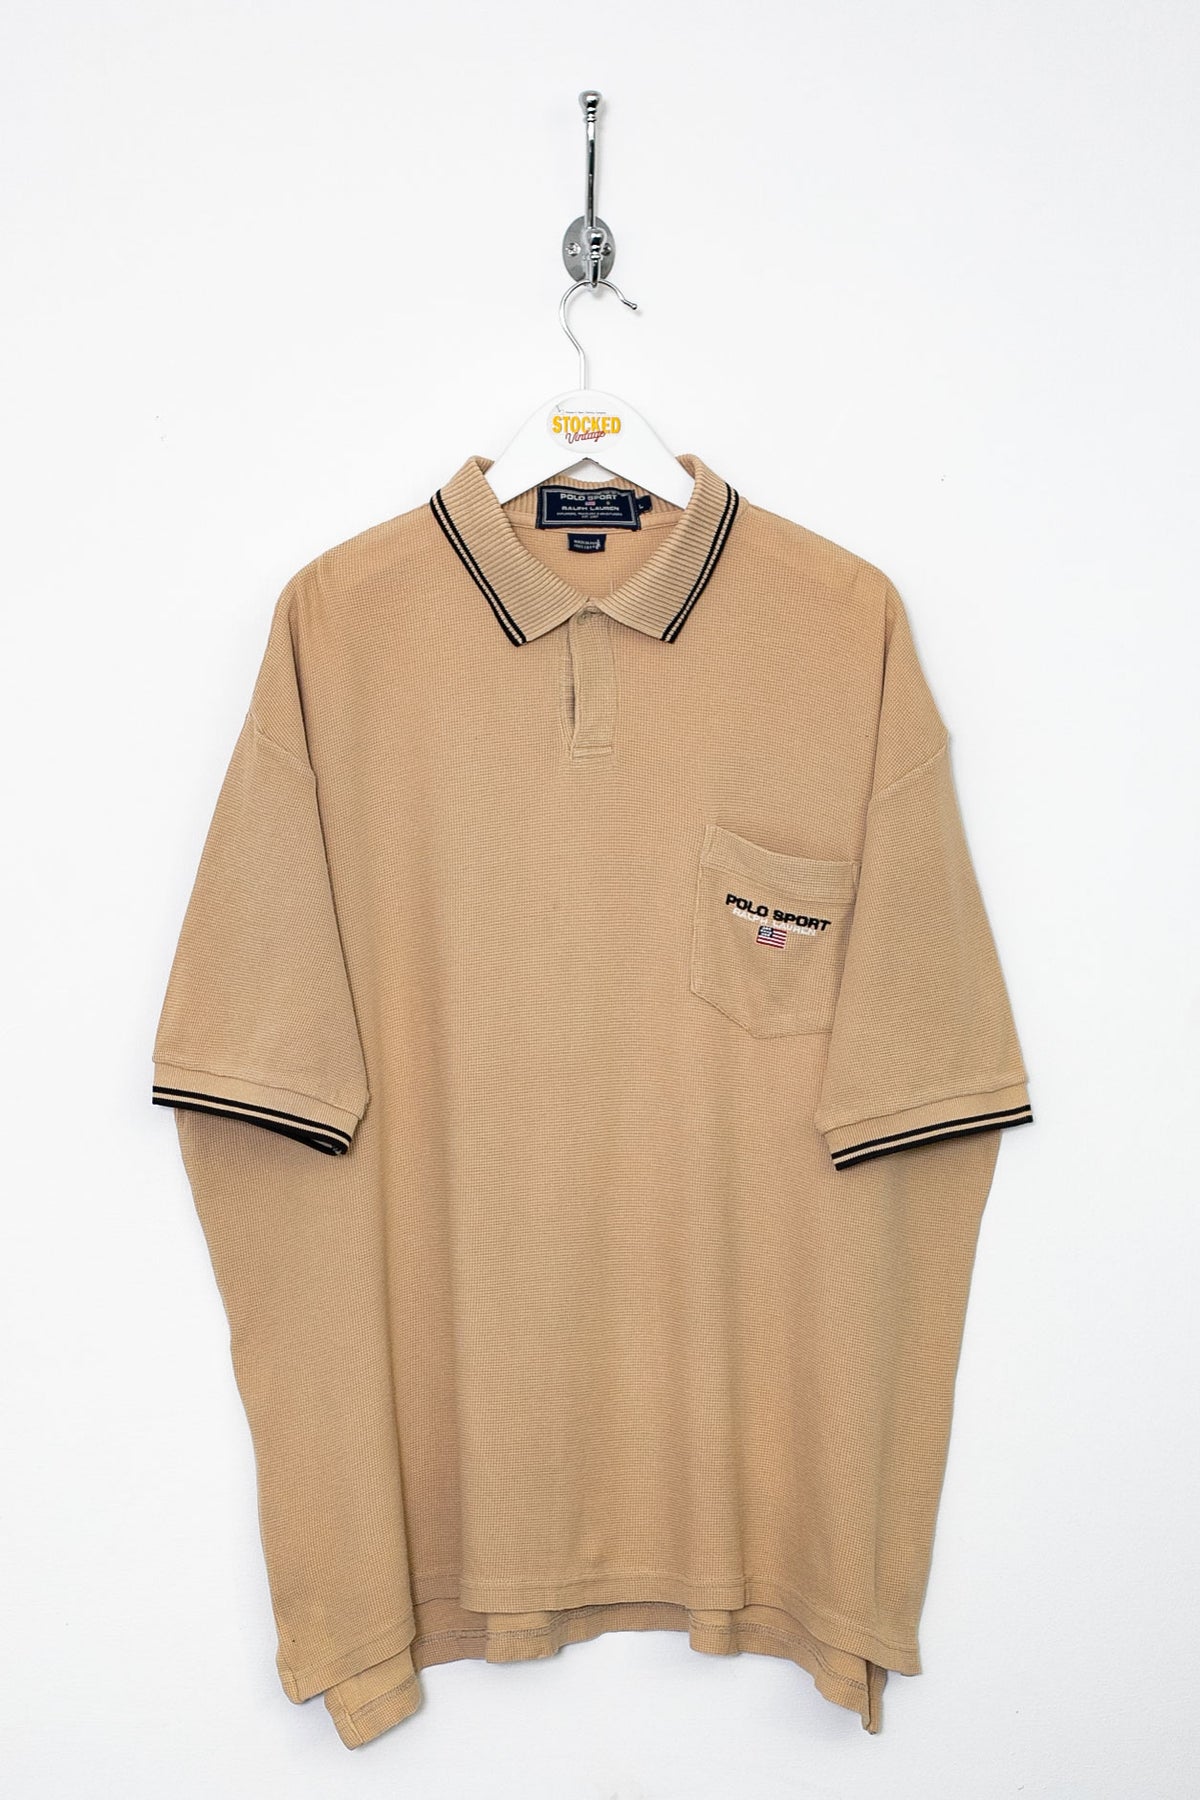 00s Ralph Lauren Polo Sport Polo Shirt (XL)